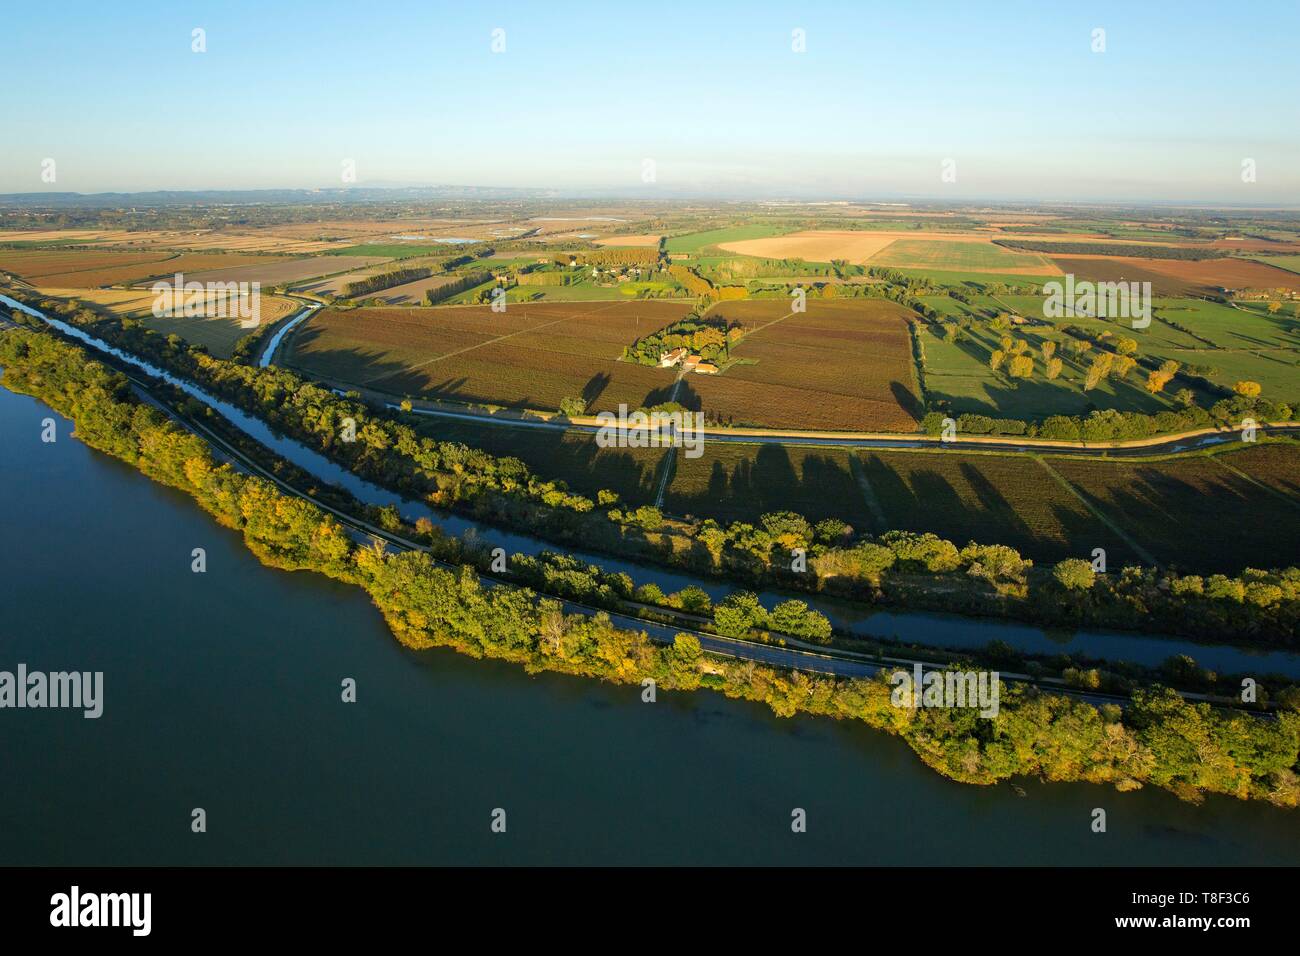 France, Bouches du Rhône, Parc Naturel Régional de Camargue, Arles, le Rhône, le canal d'Arles à Bouc et Canal du Vigueirat, près de Mas de l'Hoste (vue aérienne) Banque D'Images